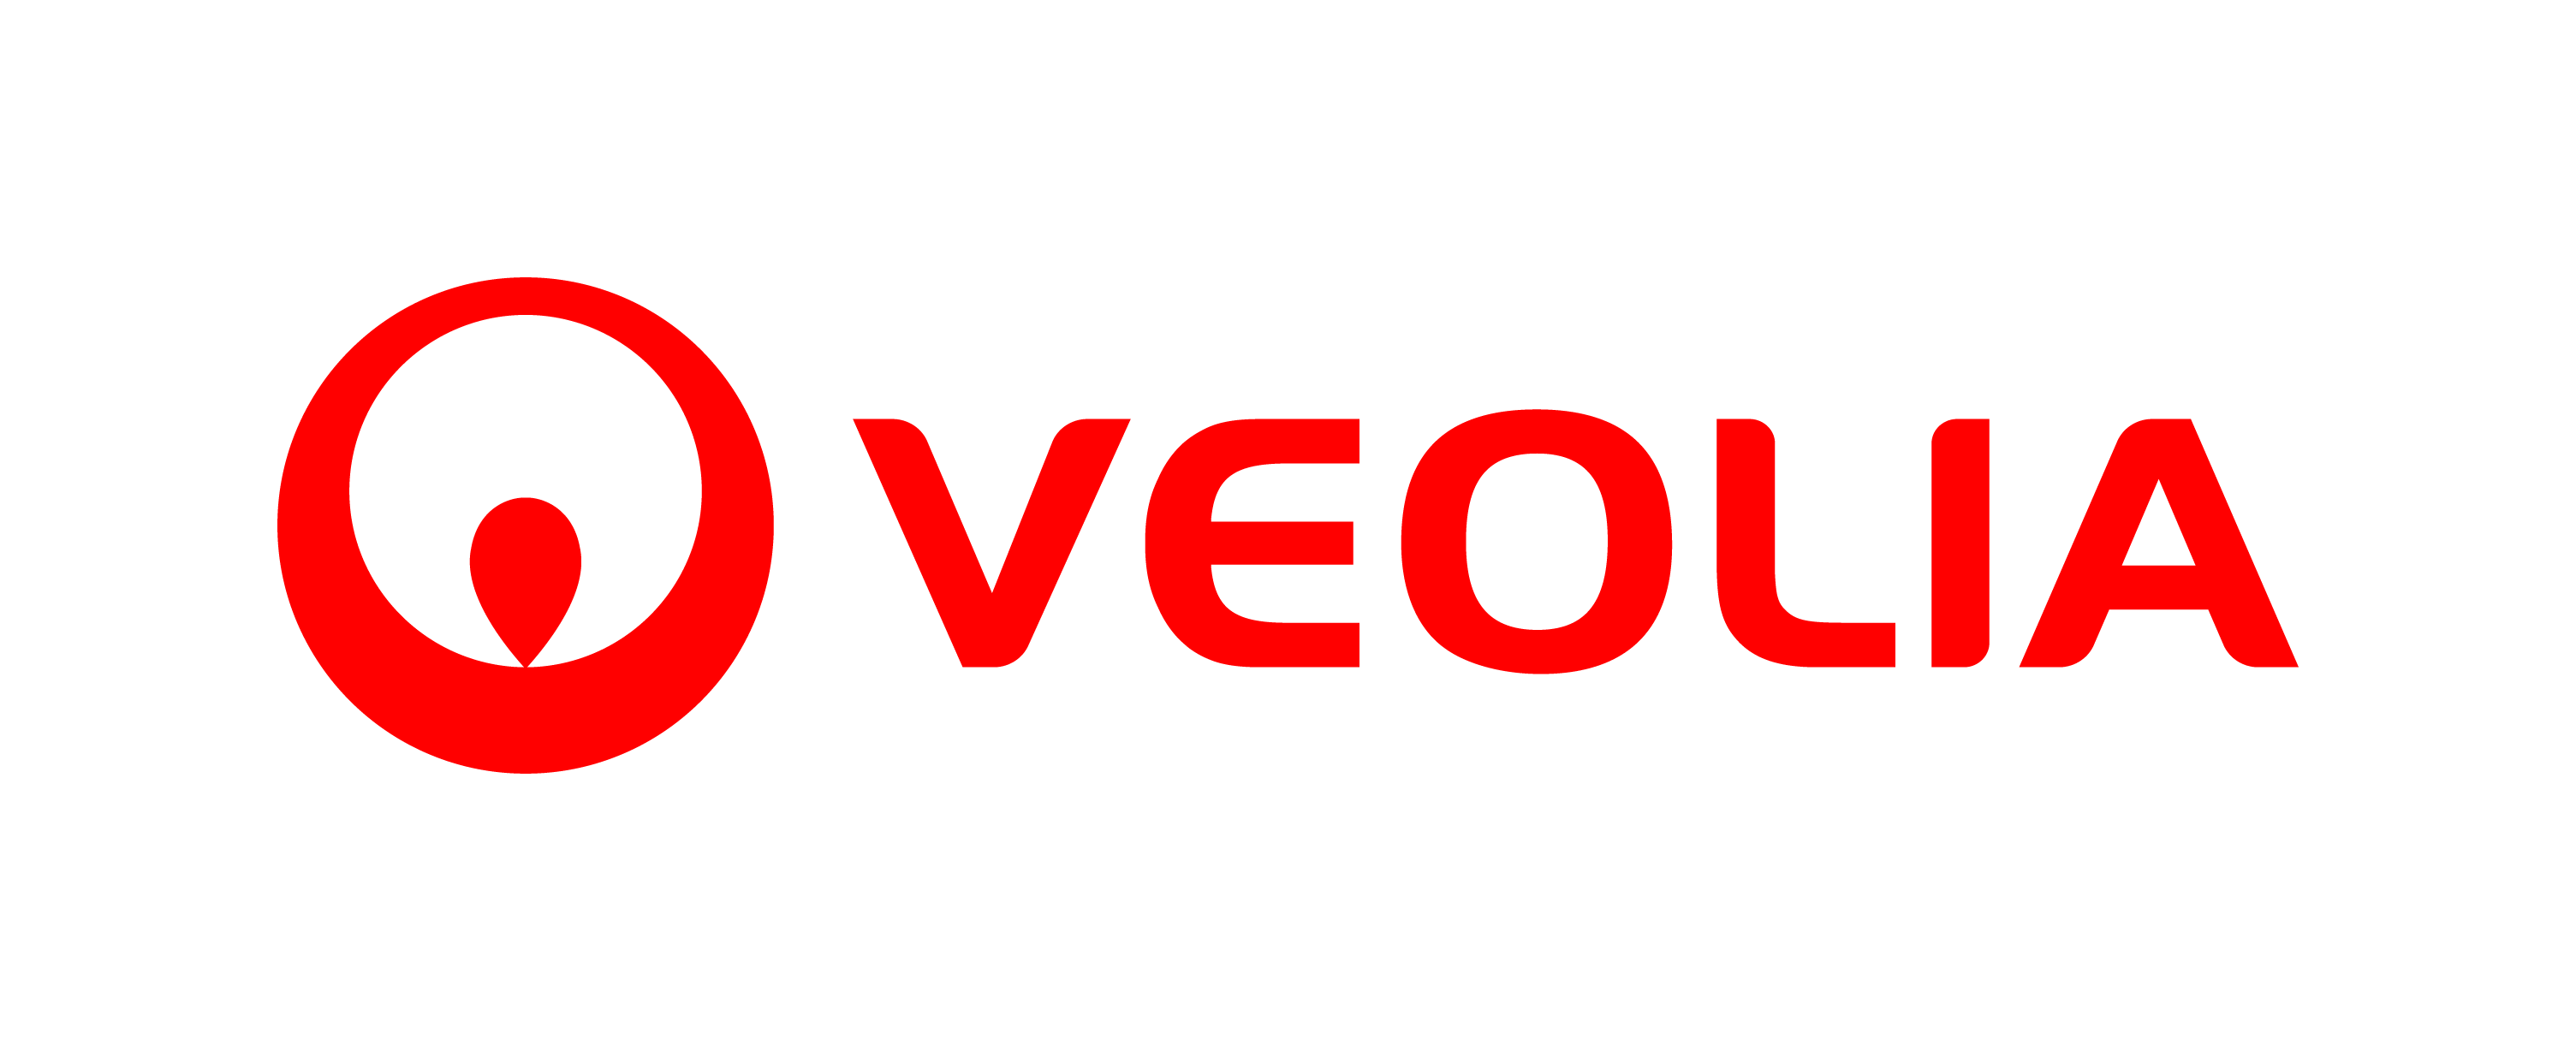 Logo Veolia.png